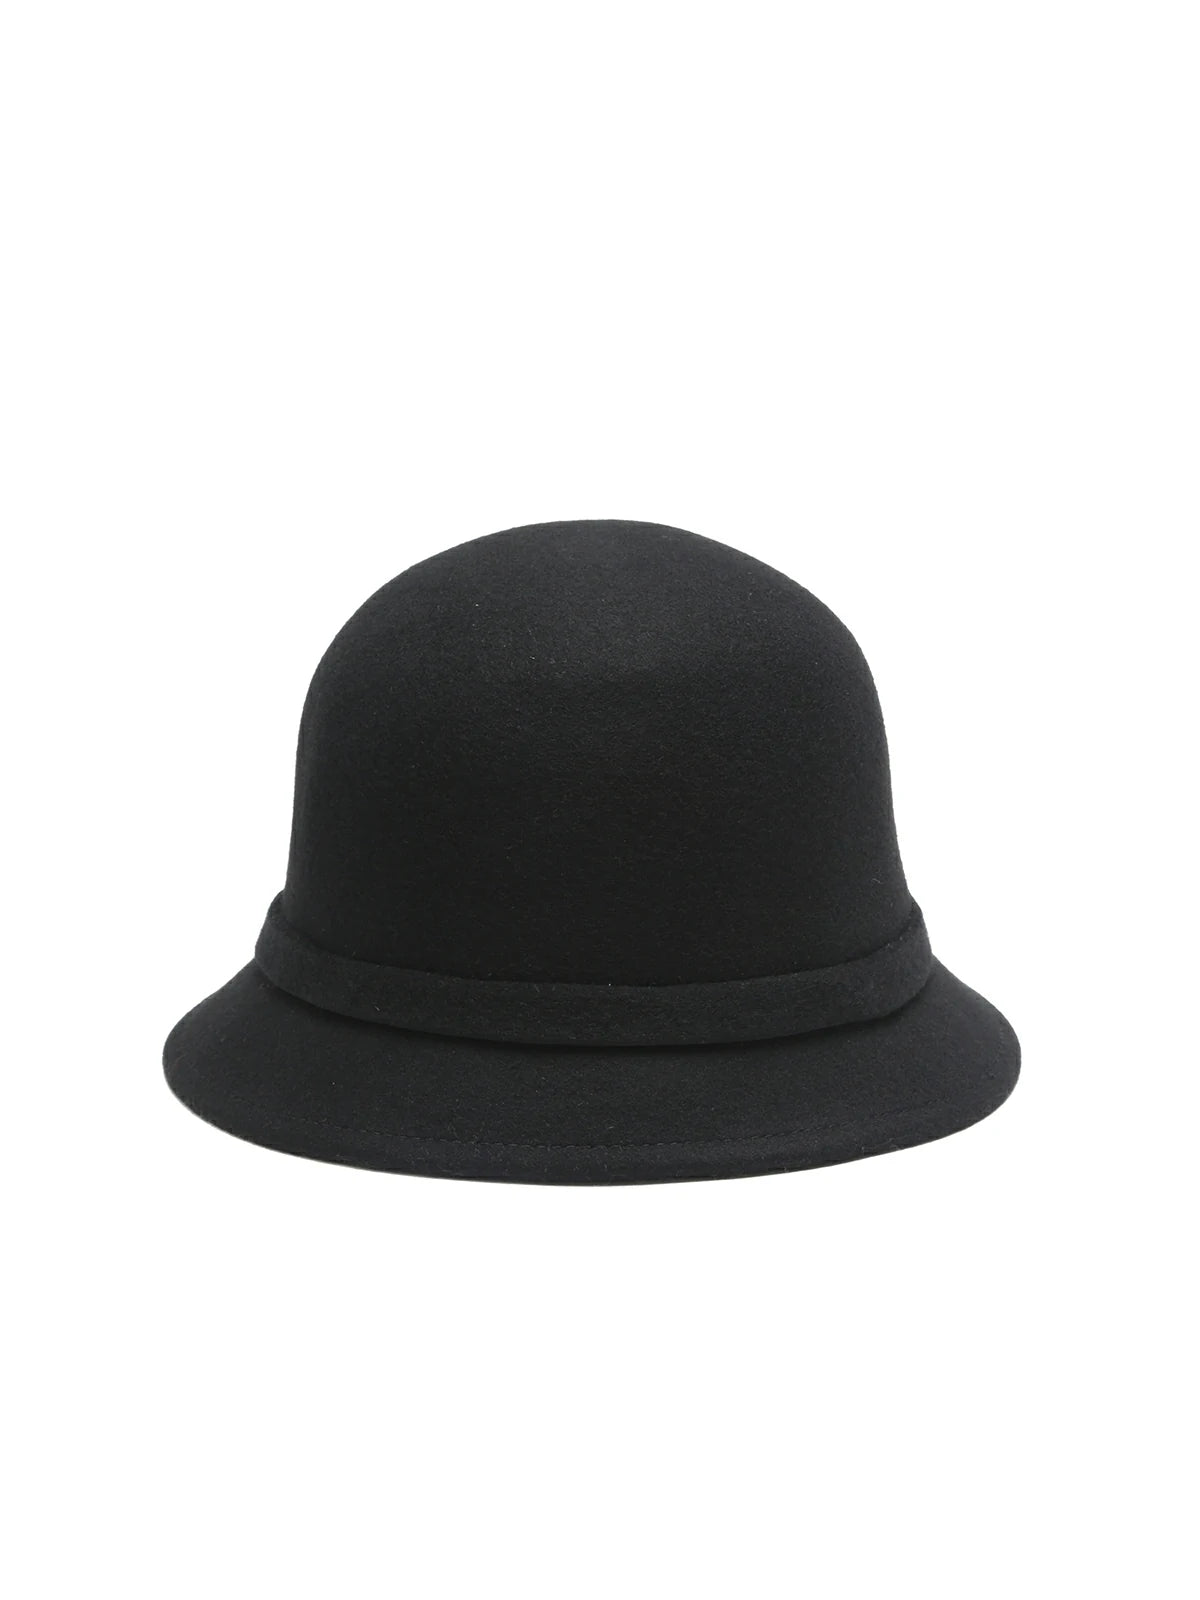 Feminine Woolen Bow Hat: Adding elegance to your winter attire.